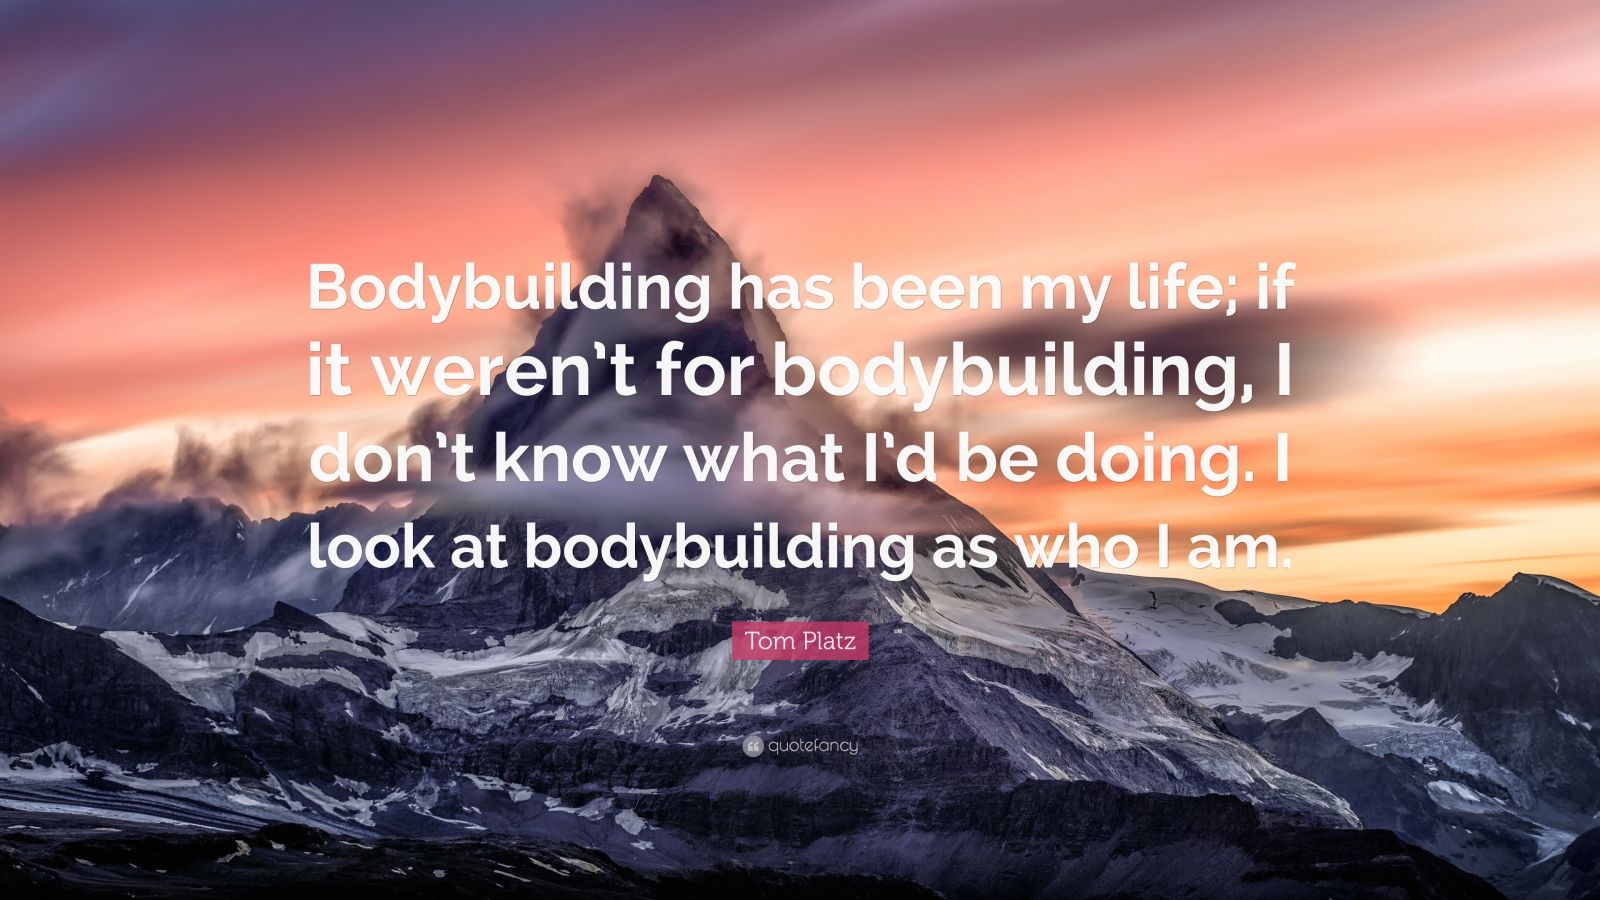 Tom Platz Quote: “Bodybuilding Has Been My Life; If It Weren’t For